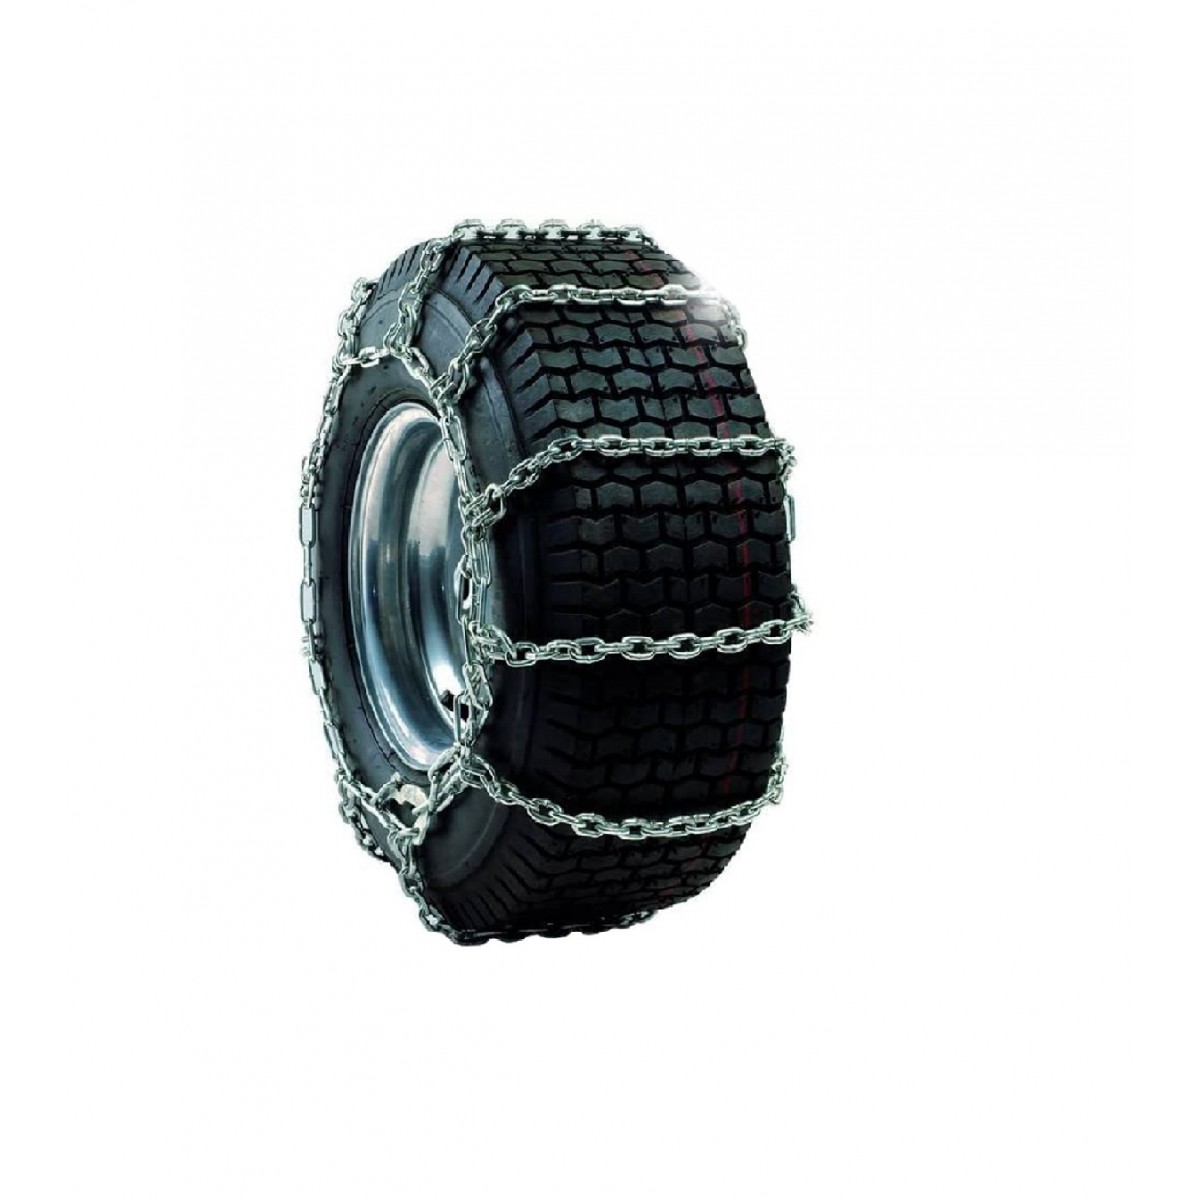 Tire chains 20 x 8.0 Cub Cadet LT/XT